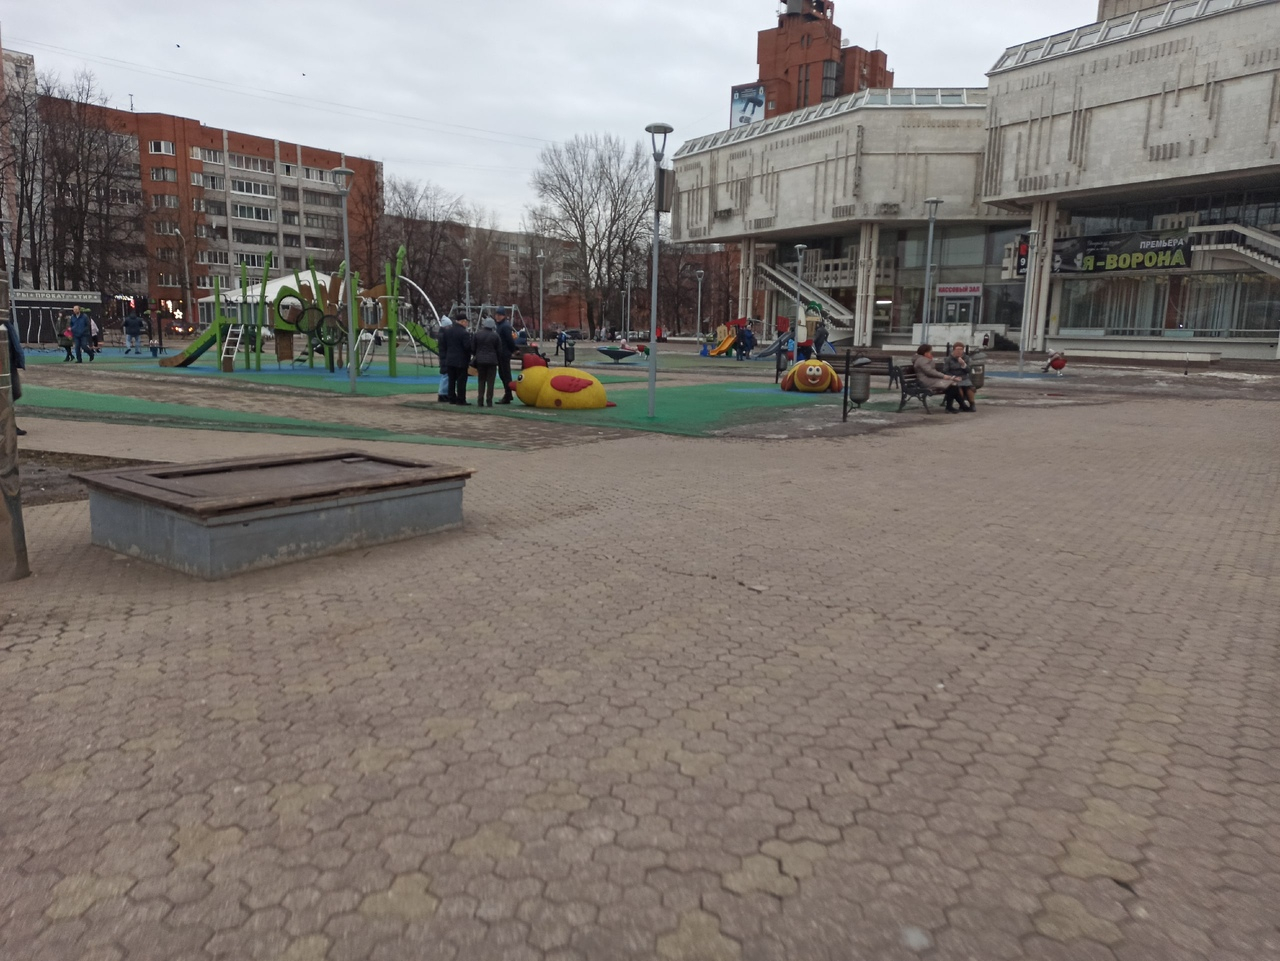 Ни лавок, ни денег: ярославская контрольно-счетная палата заподозрила обман при ремонте парка